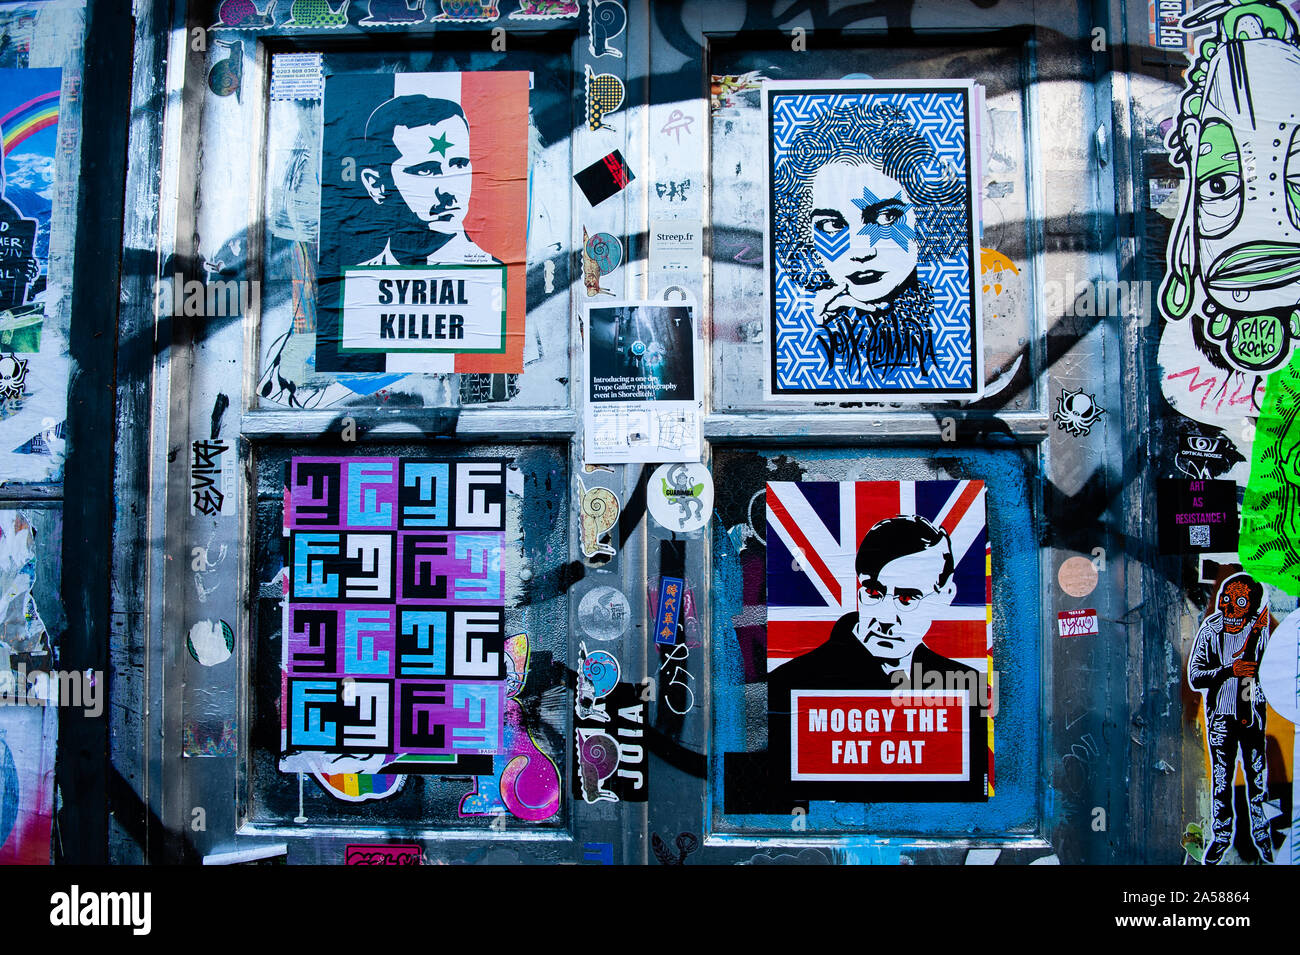 Vue de dirigeants politiques coller des images.que la date limite à l'horizon, Brexit les peintures murales et collez-bonus apparaissent sur les rues de Londres. Brick Lane, dans l'East End londonien, est un des endroits les plus populaires pour trouver toutes sortes d'art autour du Brexit. Aussi dans le célèbre quartier de Shoreditch, les touristes à pied et prendre des photos autour de cette rue politique art. Banque D'Images